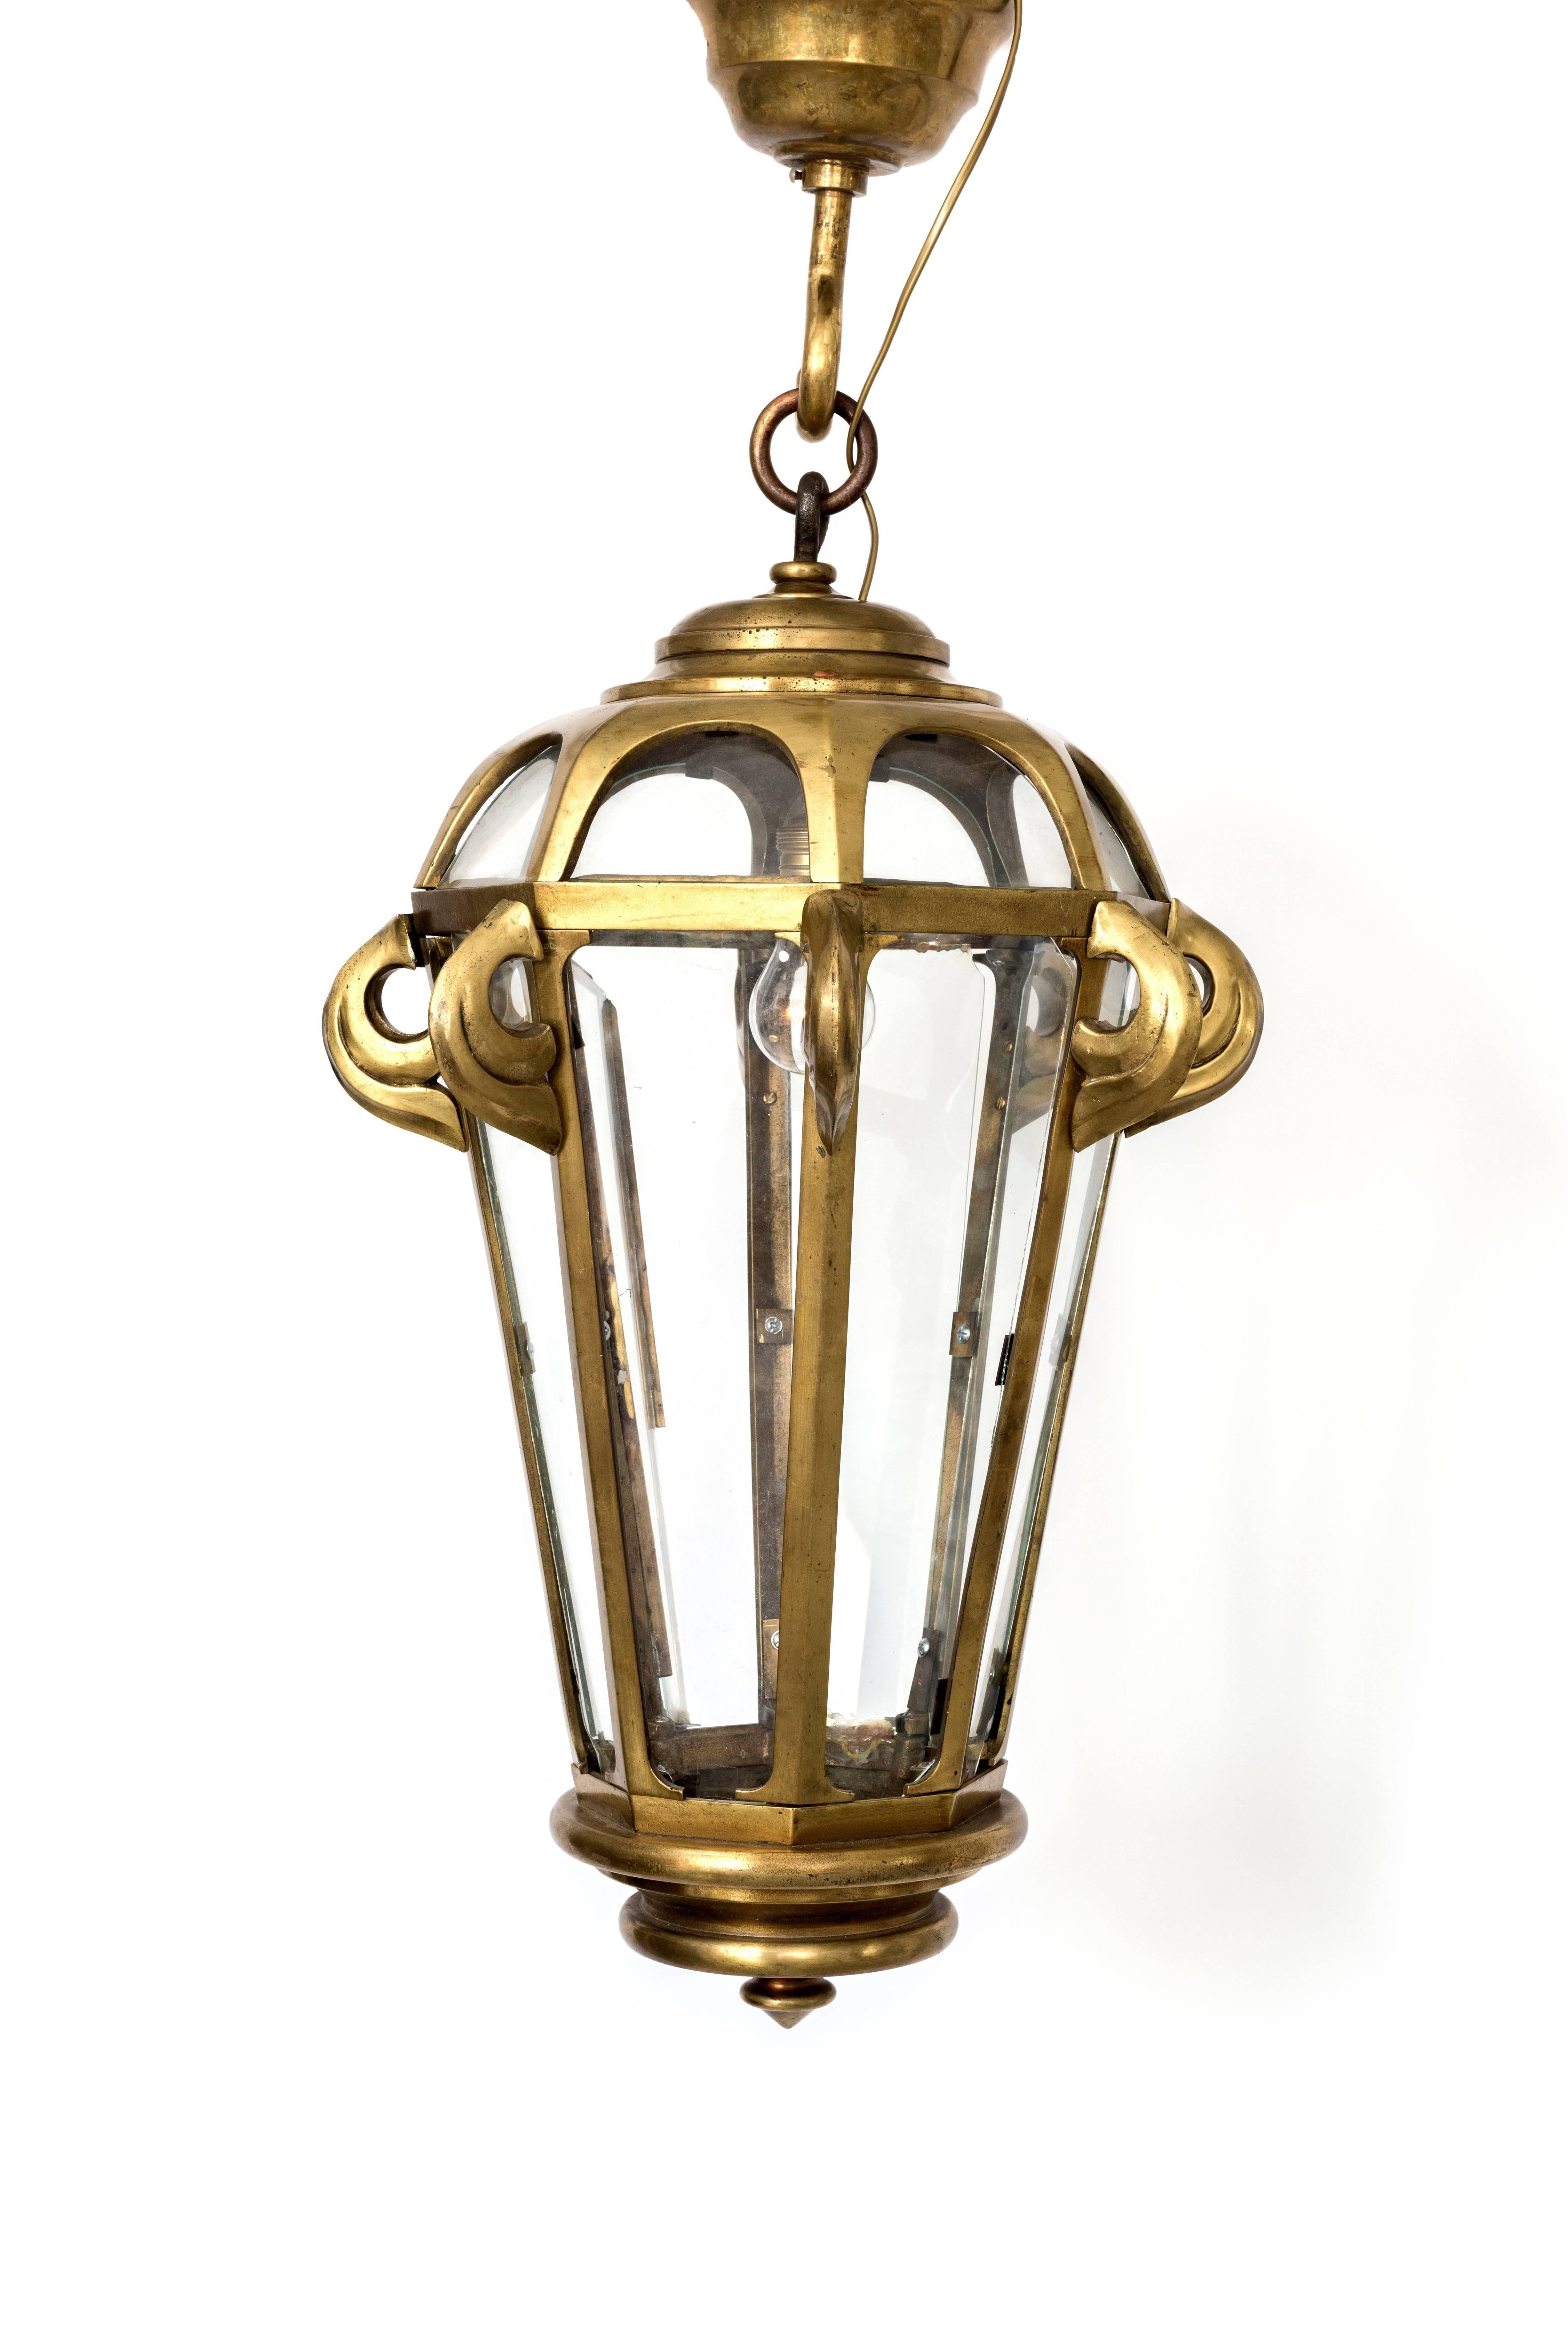 Une grande lanterne française en bronze à six côtés. Français.